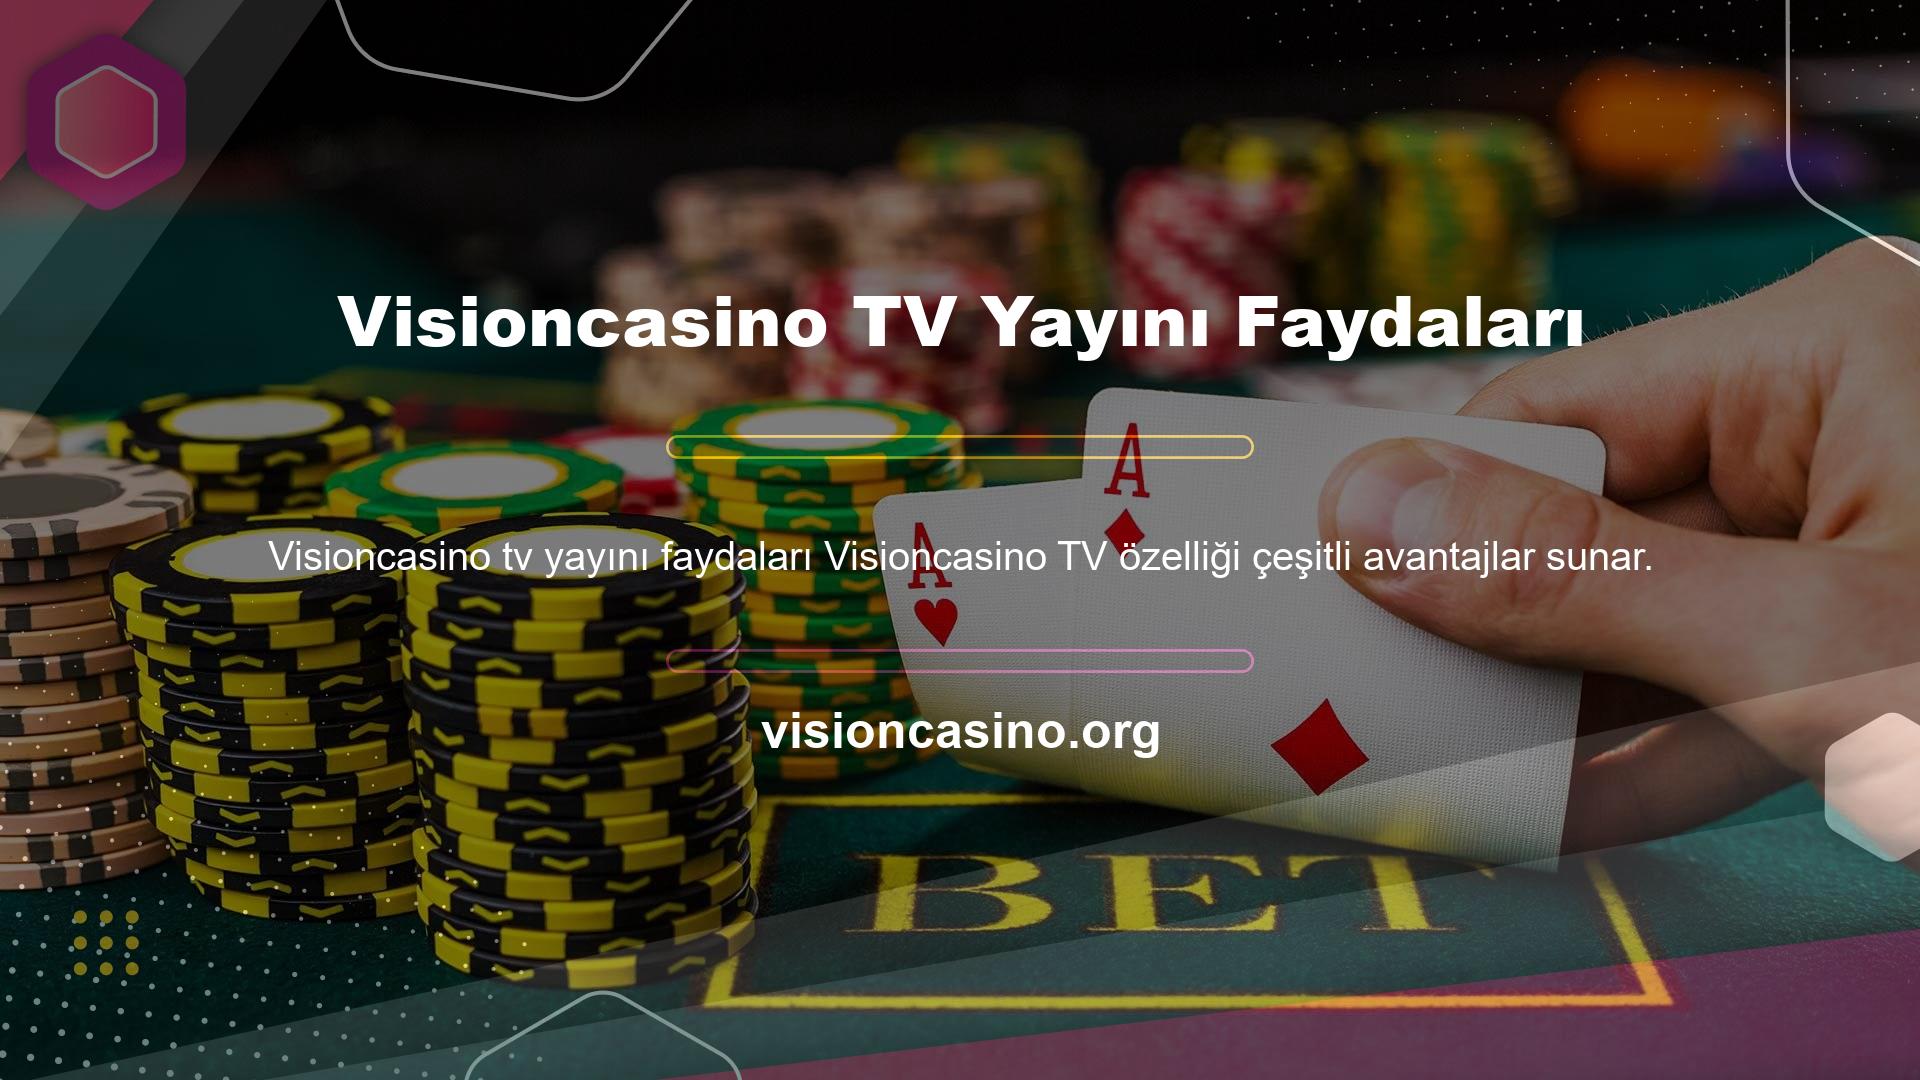 Site, maç izlemenin yanı sıra yaklaşan maçları izleyebilmeniz için Visioncasino TV şovları da sunuyor